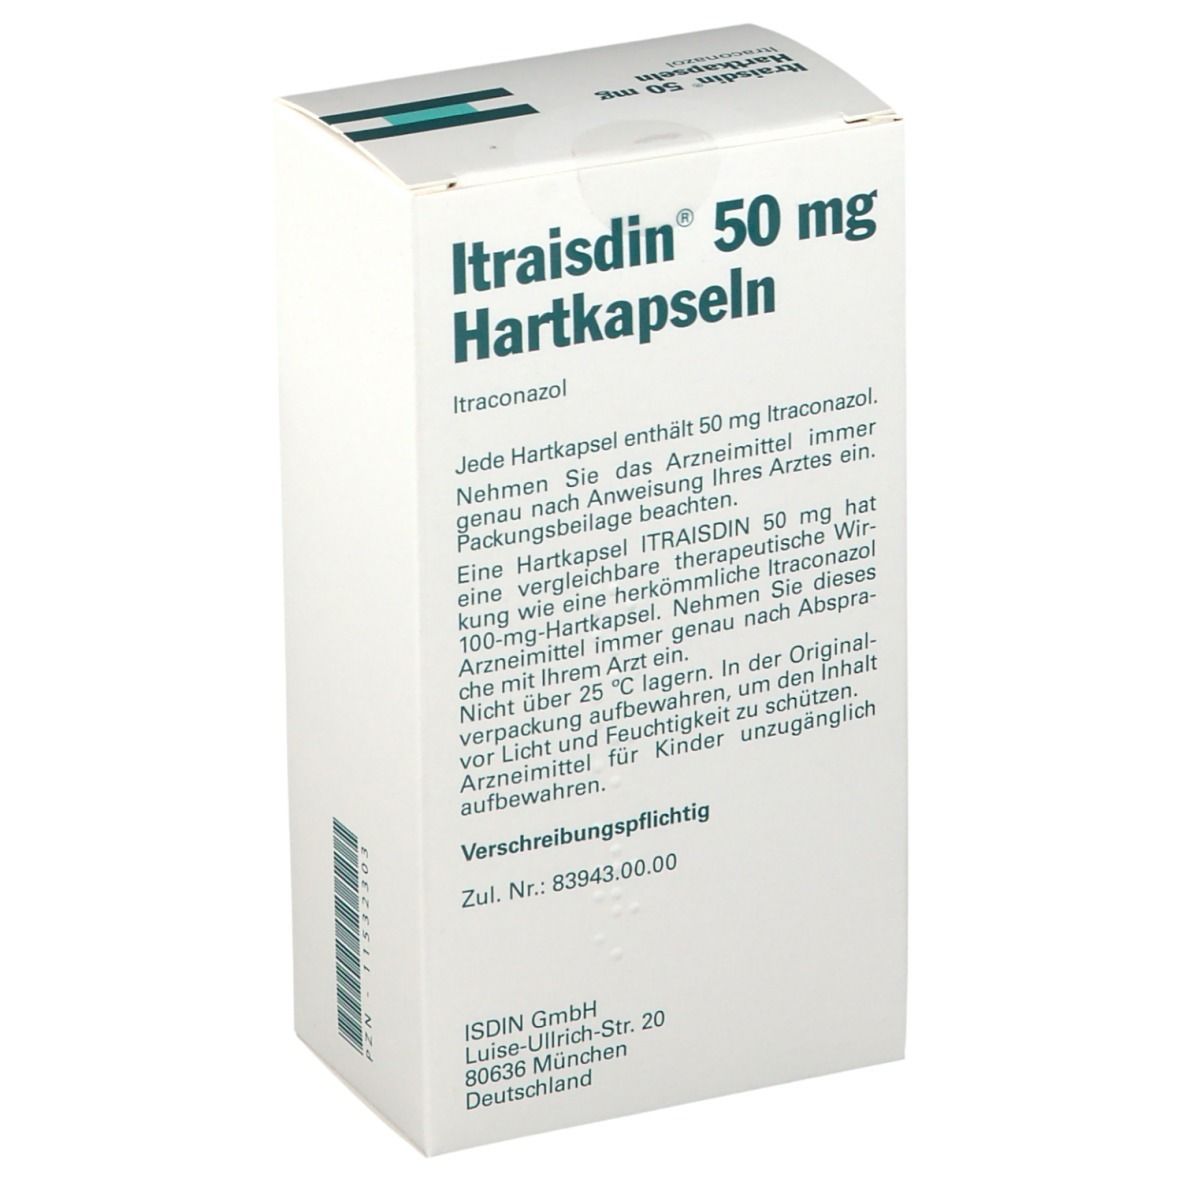 Itraisdin® 50 mg